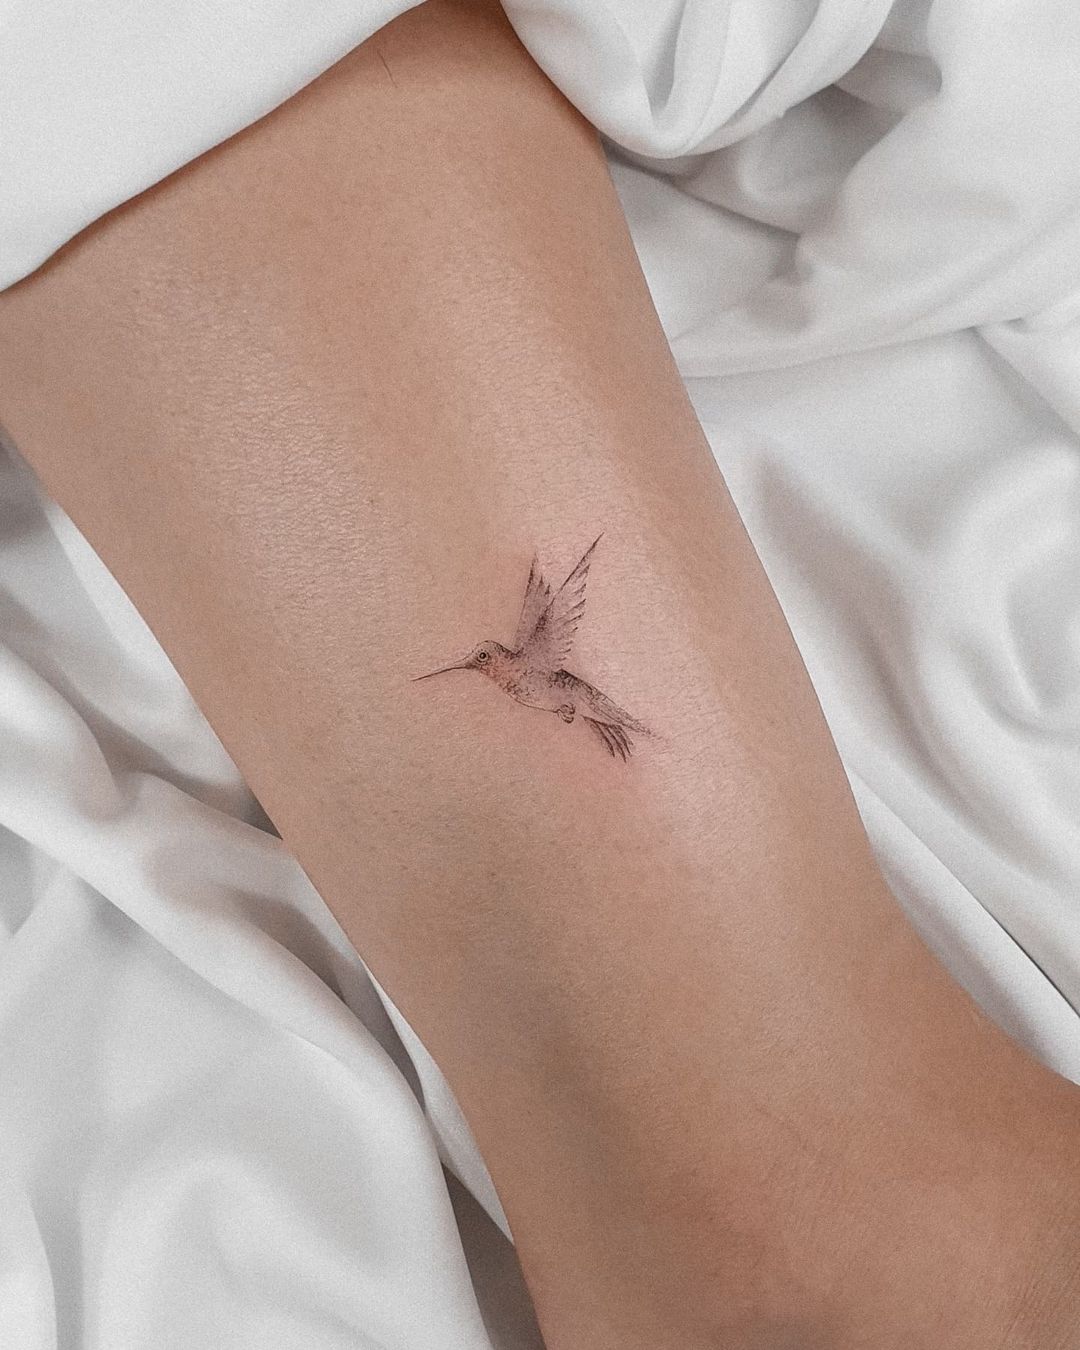 Tatuaje pequeño de colibrí de tinta negra.